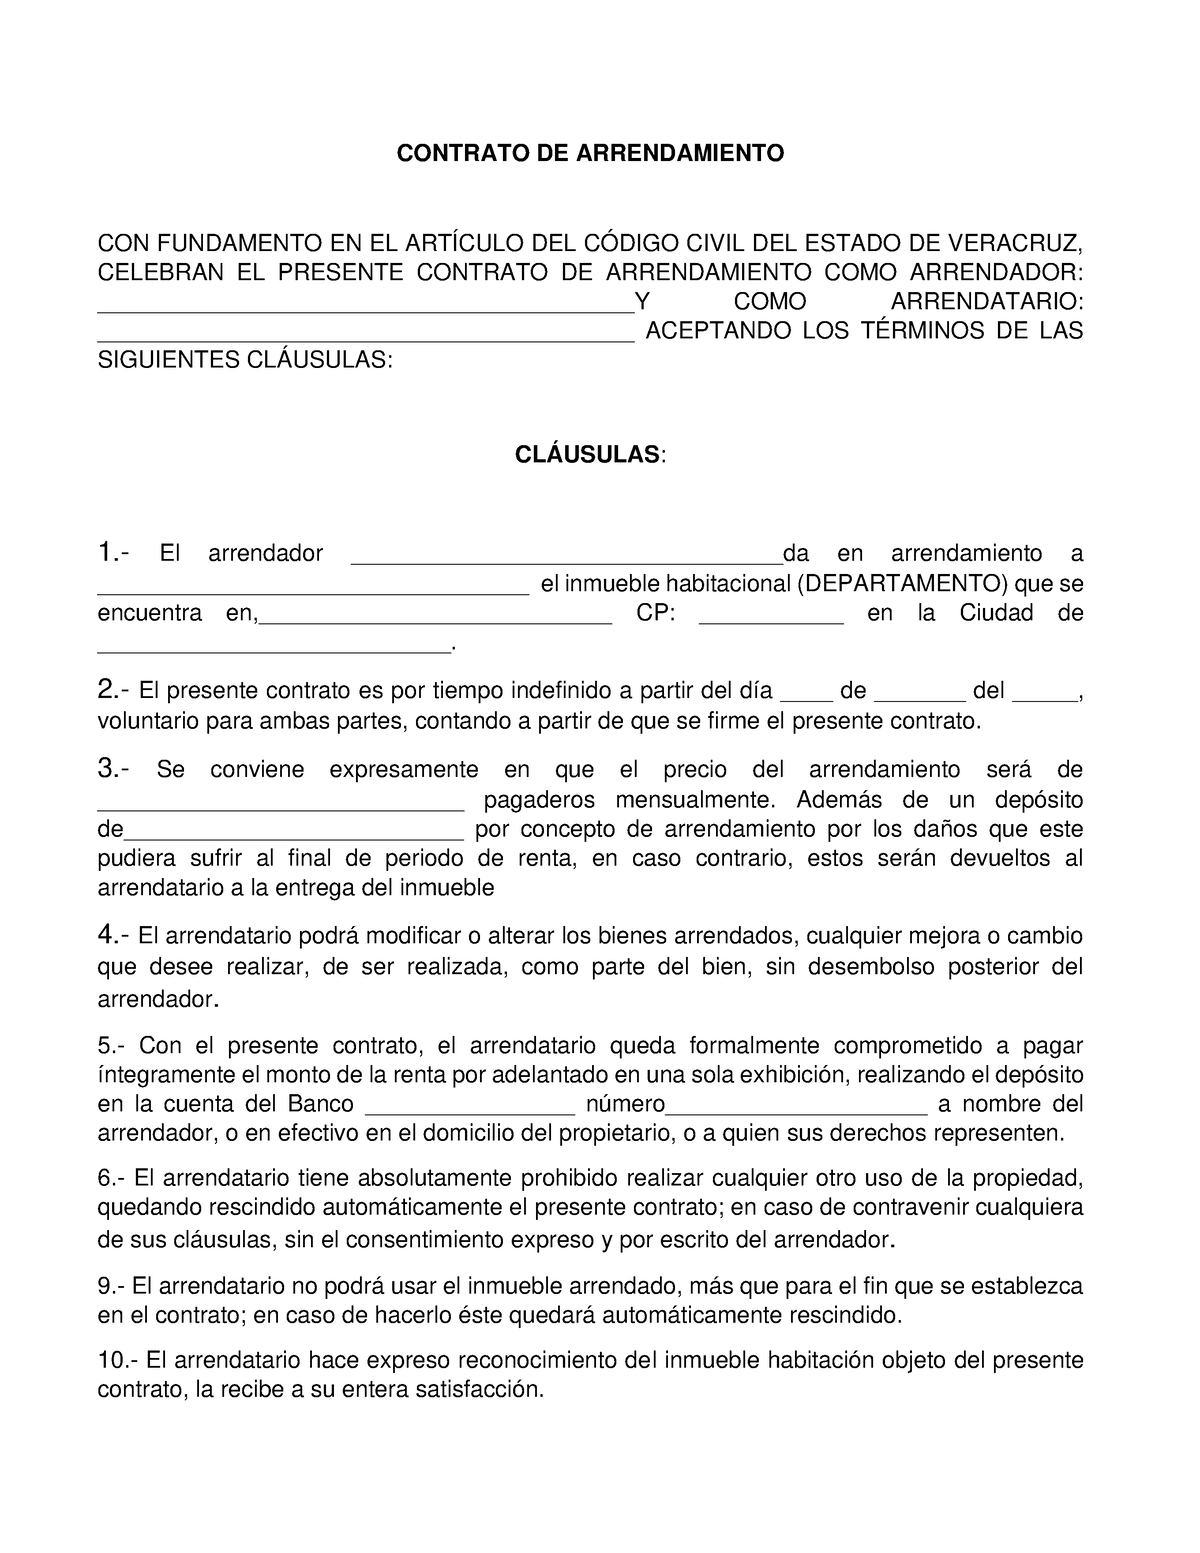 Contrato DE Errendamiento - CONTRATO DE ARRENDAMIENTO CON FUNDAMENTO EN ...